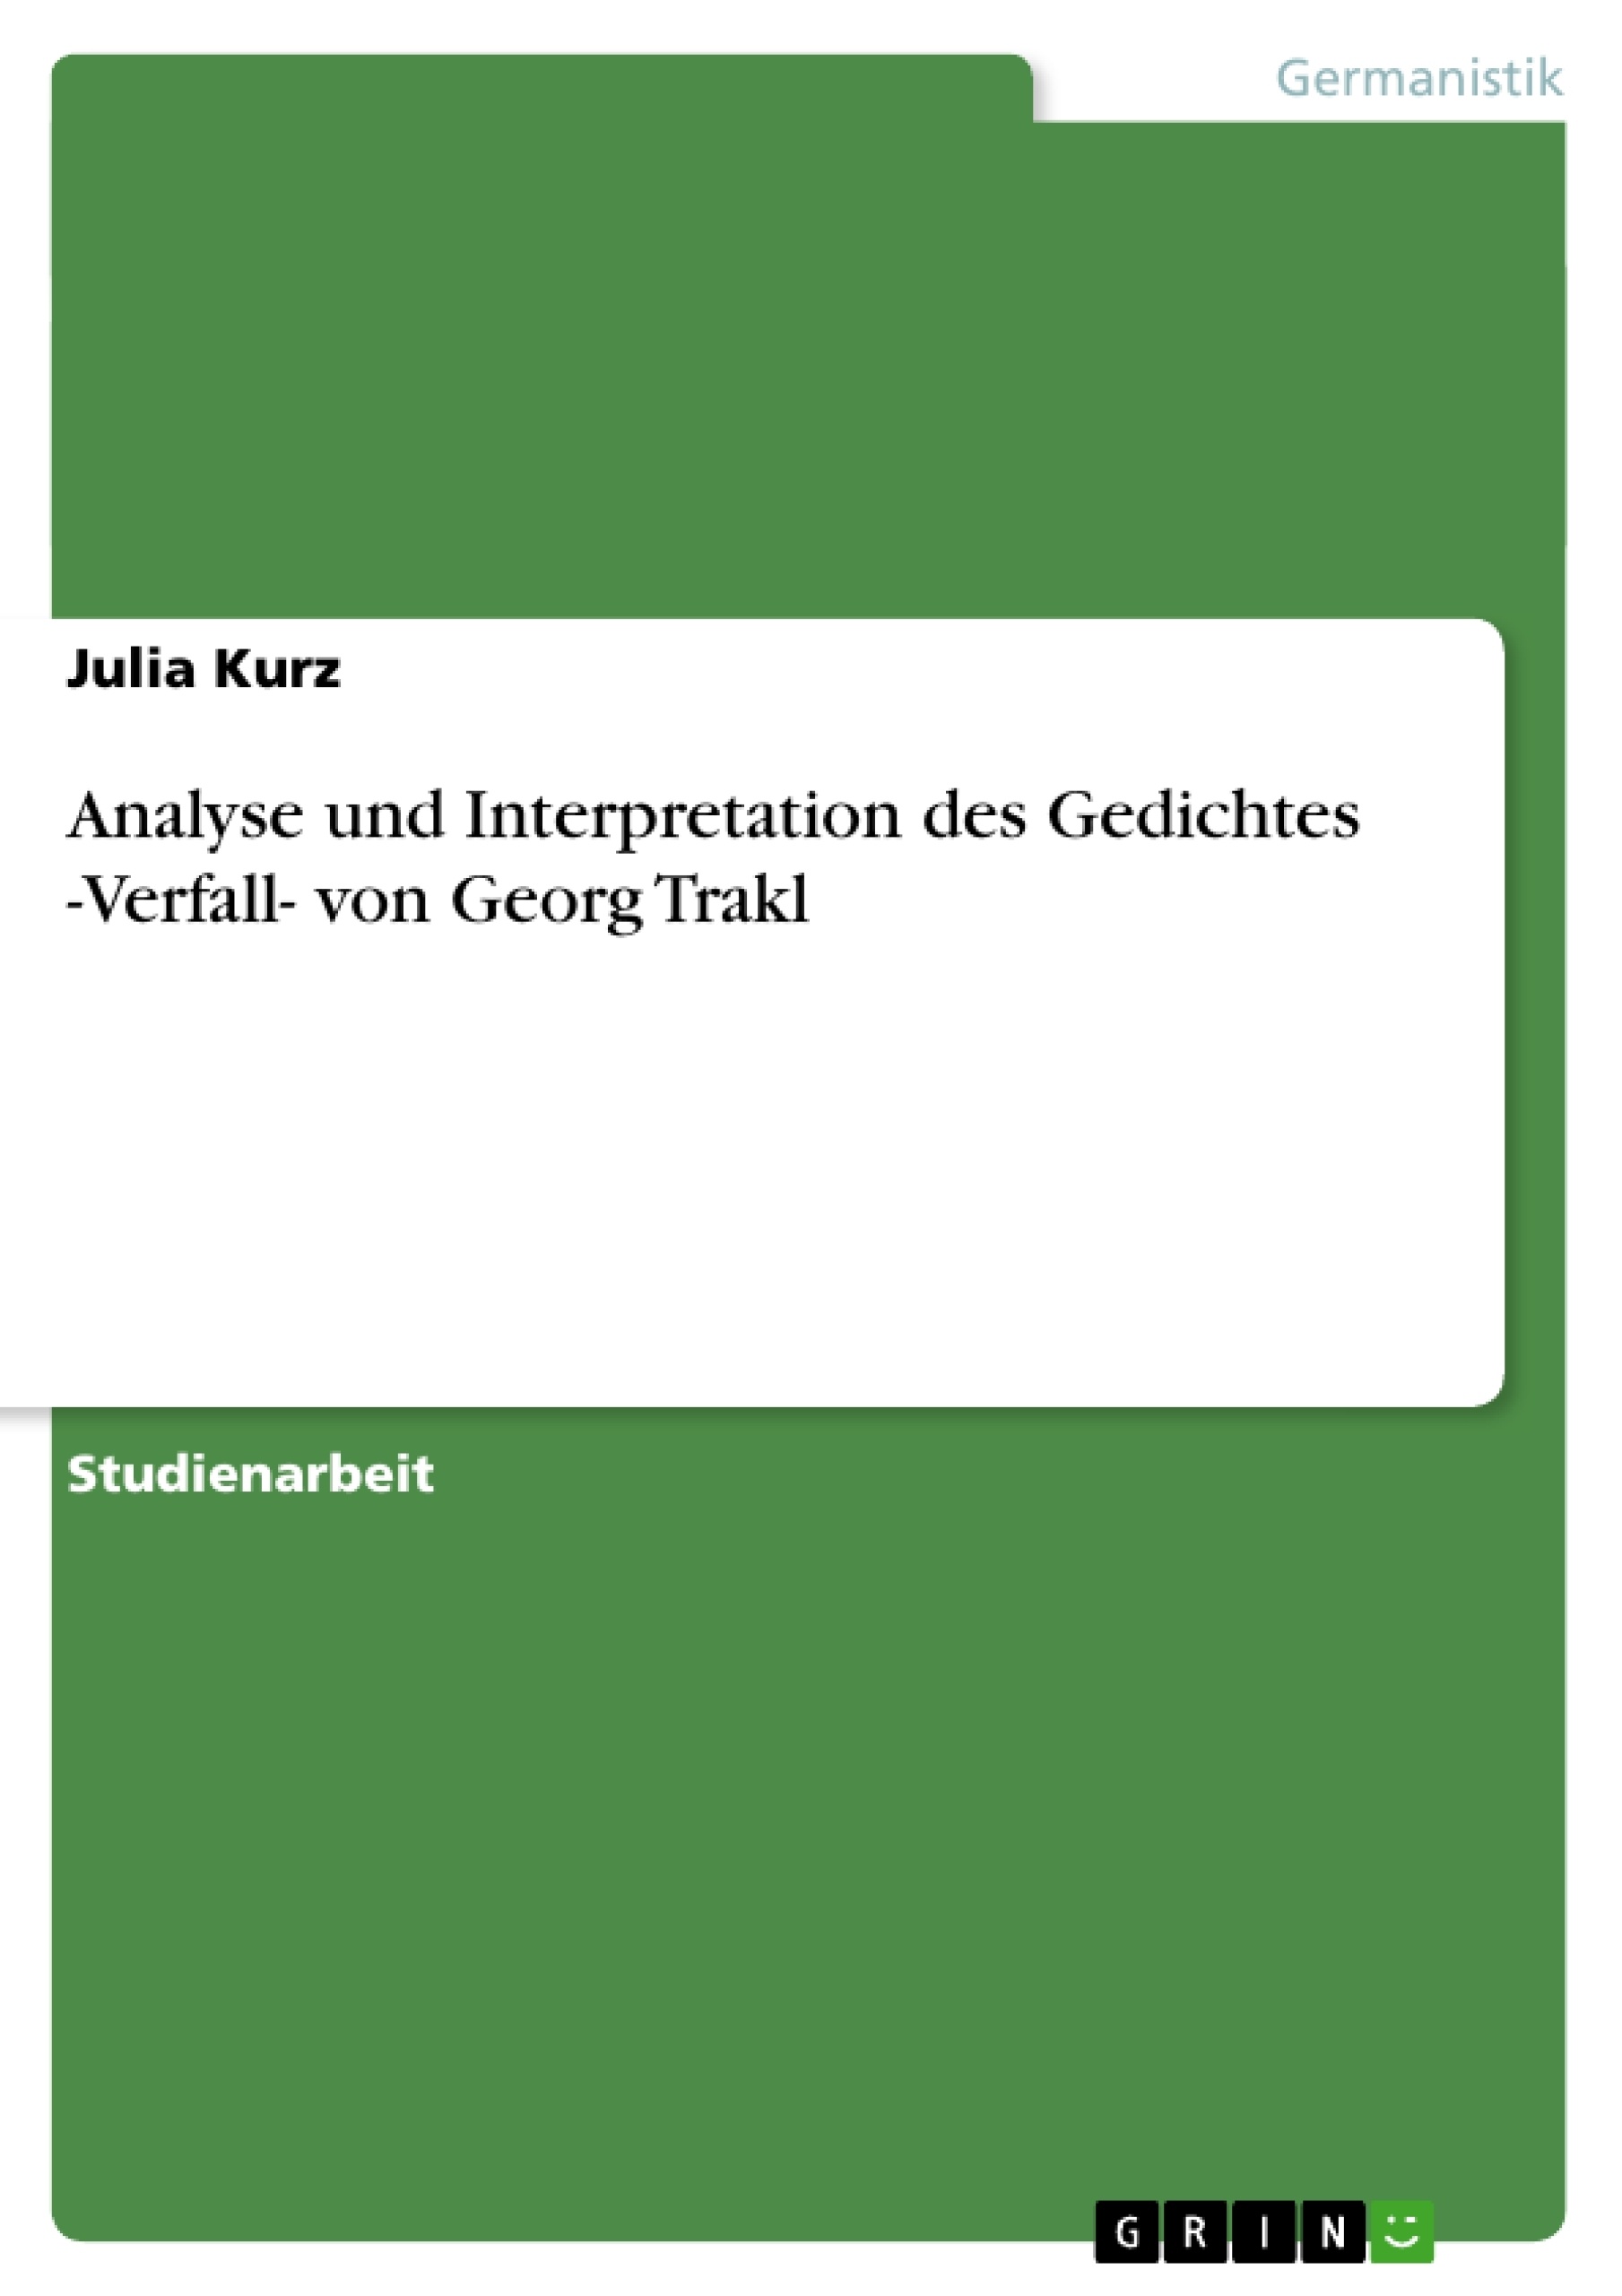 Título: Analyse und Interpretation des Gedichtes -Verfall- von Georg Trakl